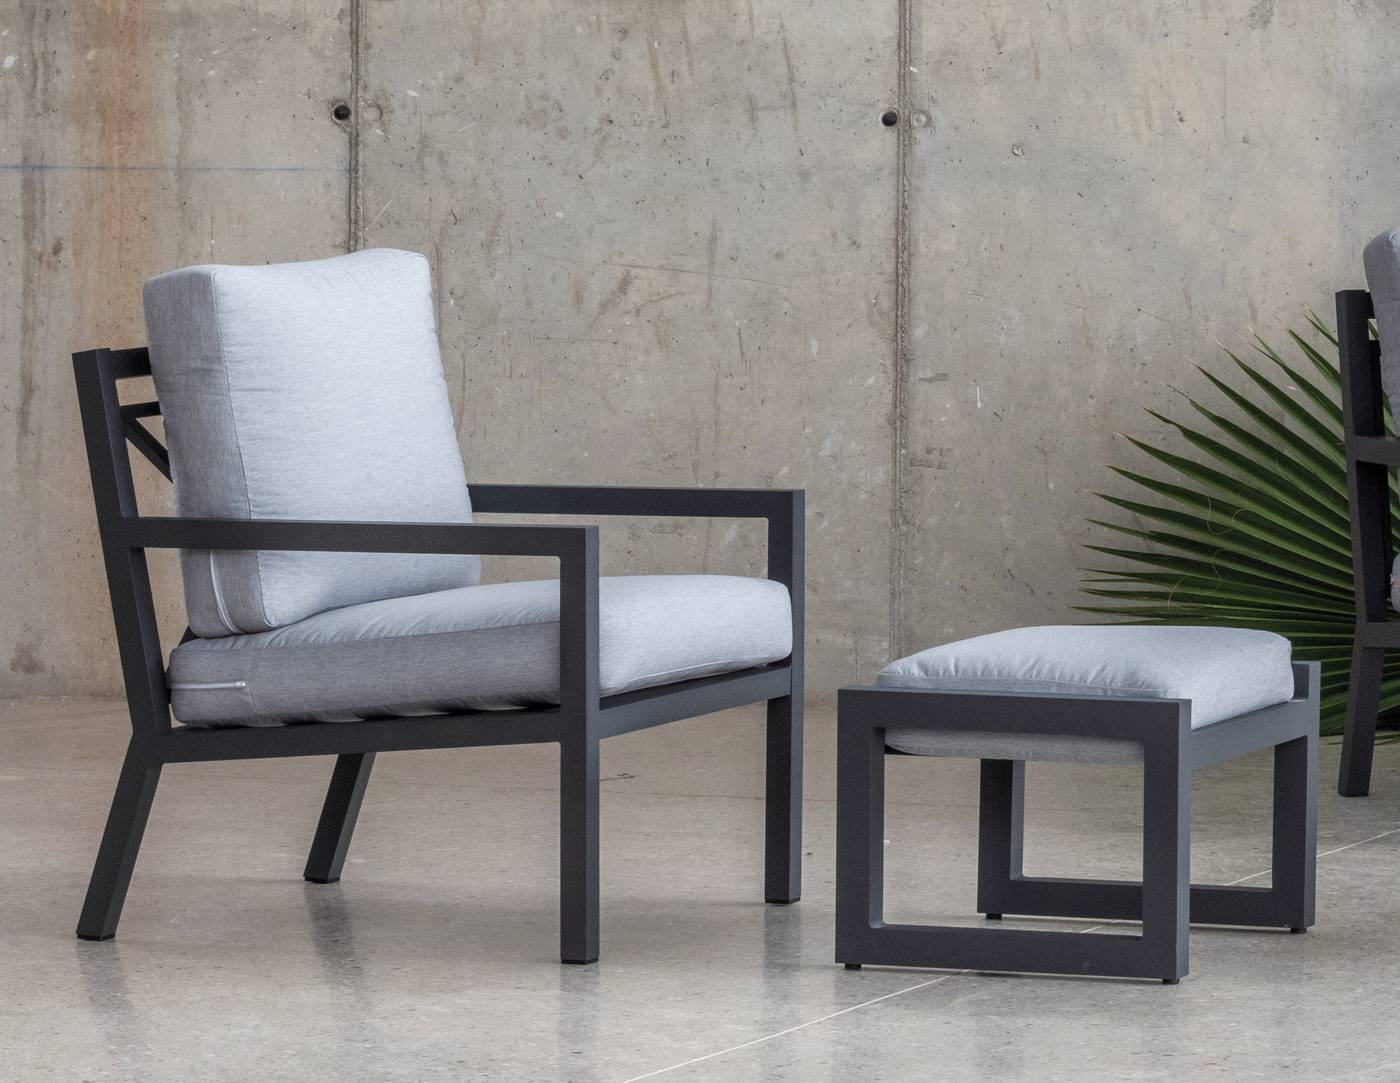 Set Aluminio Luxe Dounvil-9 - Conjunto de aluminio de lujo que incluye: un sofá dos plazas, dos sillones, una mesa de centro,  dos reposapiés y cojines. Estructura aluminio color blanco, antracita, champagne, plata o marrón.